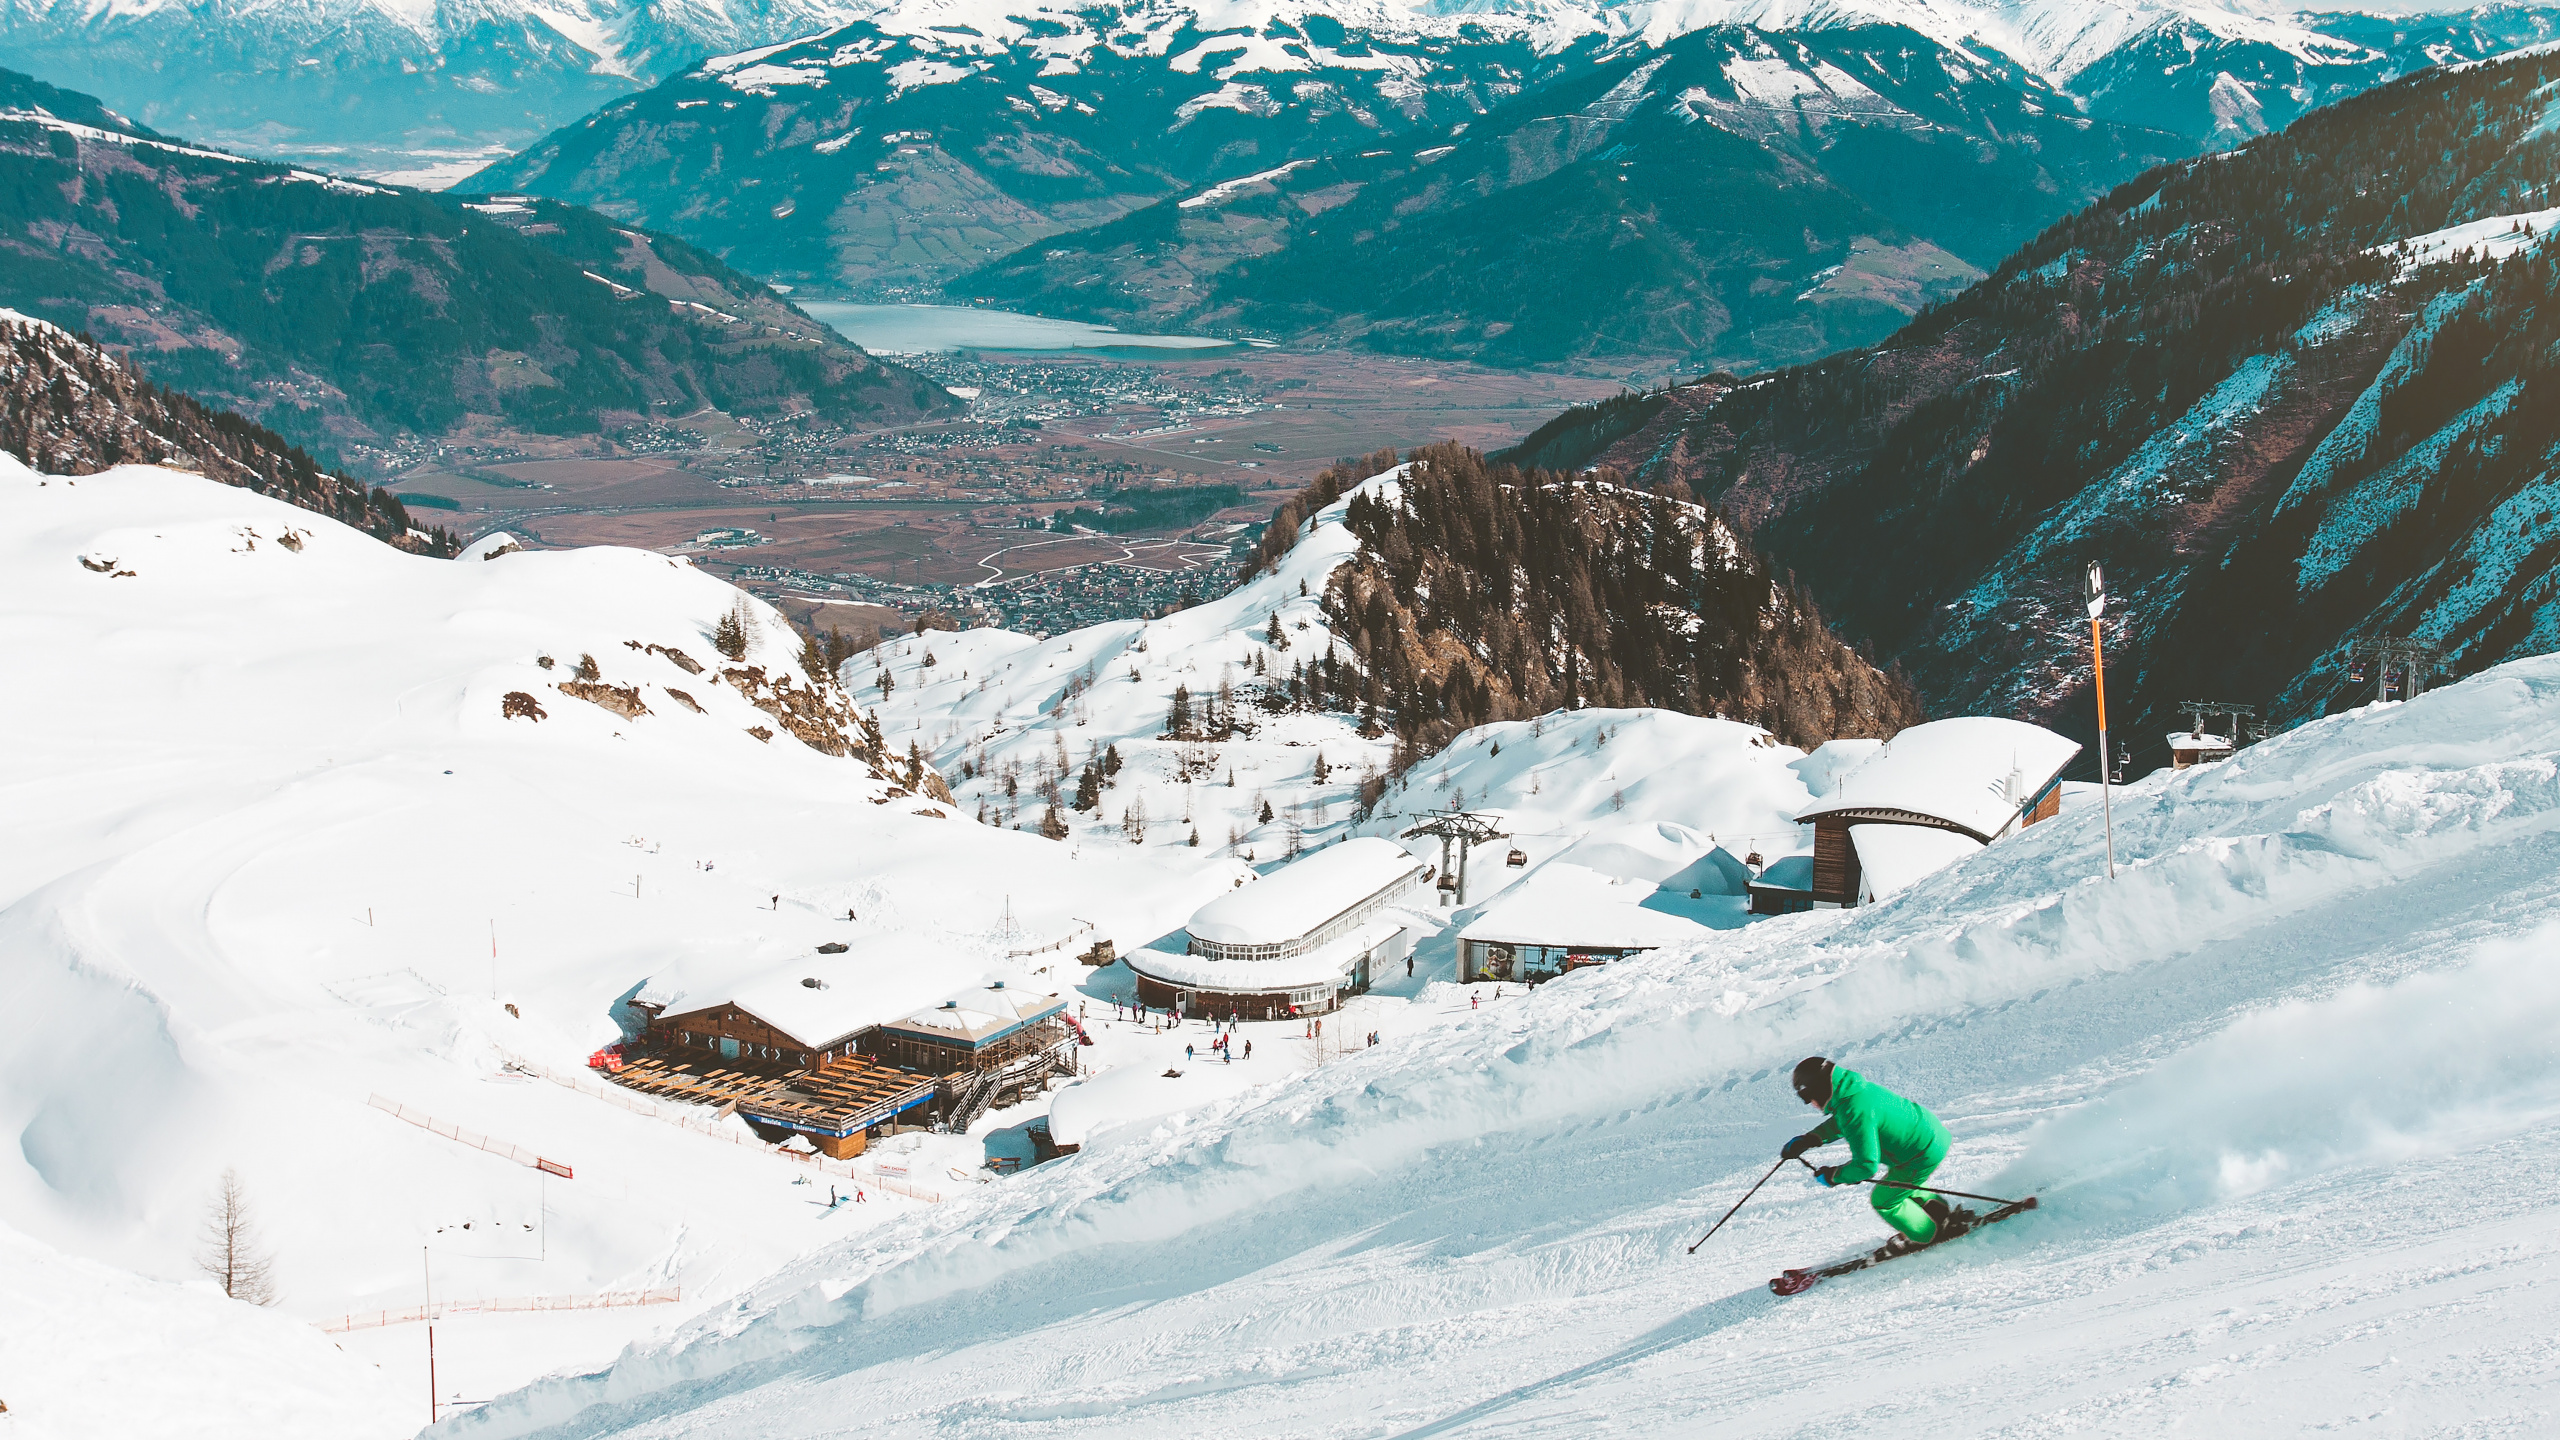 Skigebiet, Skifahren, Resort, Schnee, Bergigen Landschaftsformen. Wallpaper in 2560x1440 Resolution